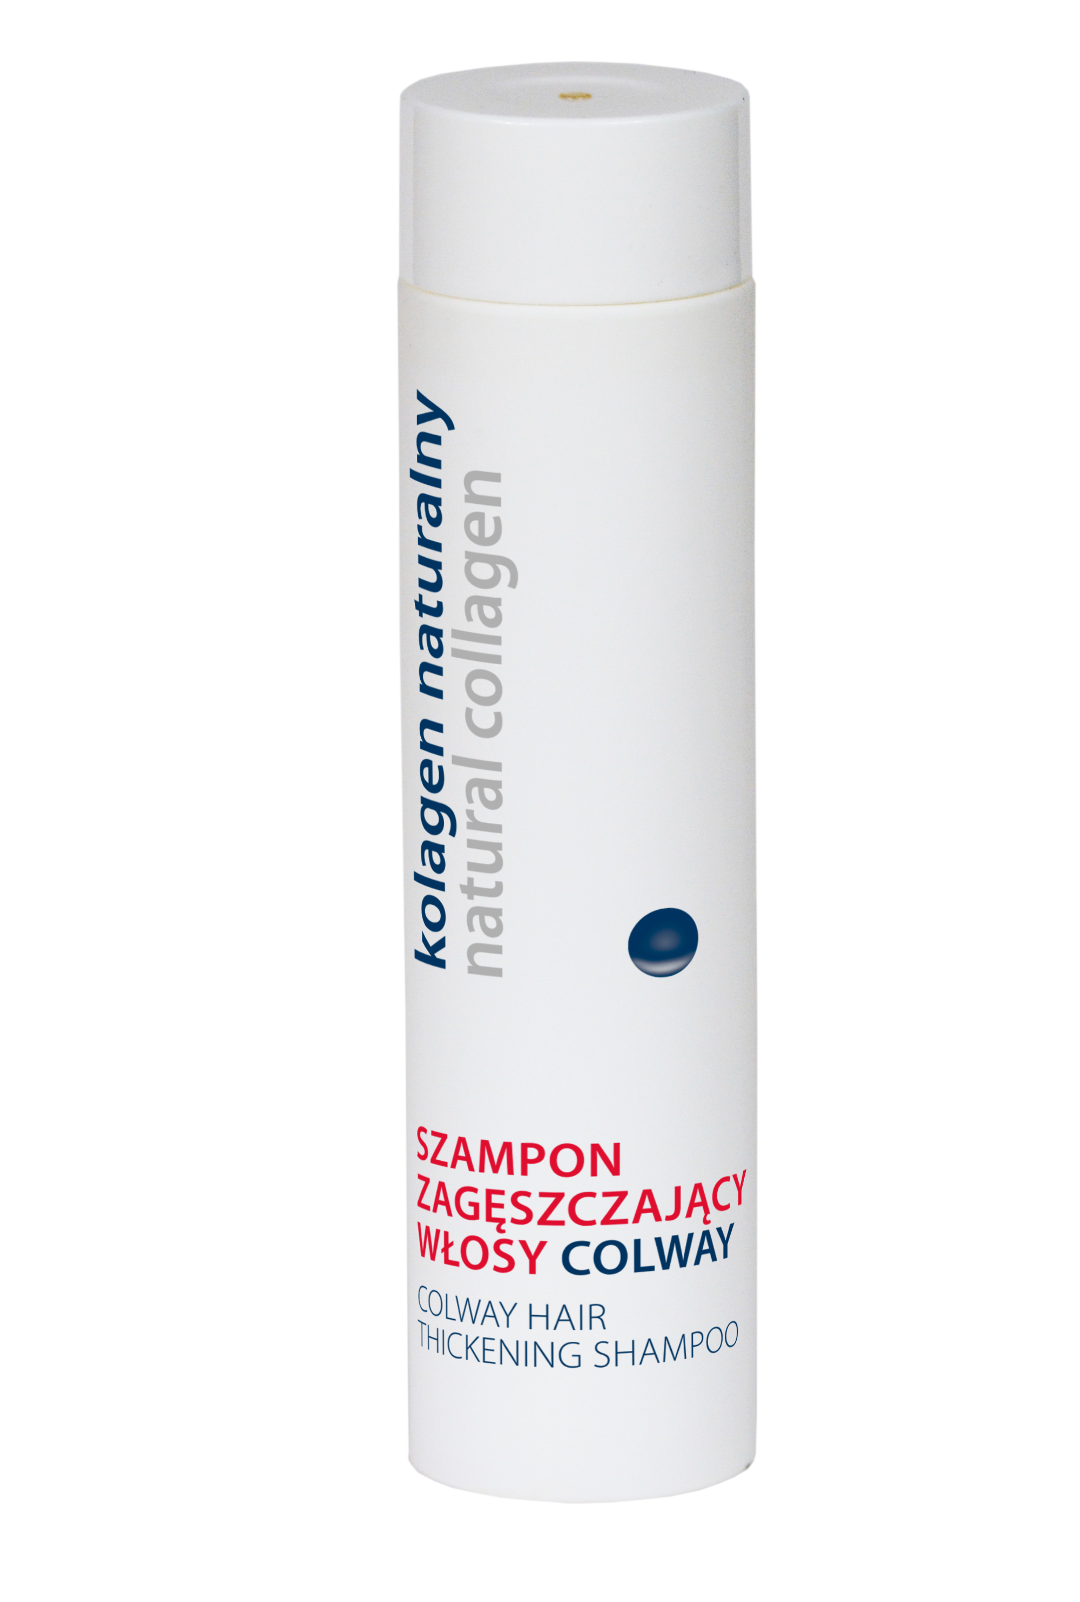 szampon zageszvzajacy wlosy kolagen naturalmy.colway